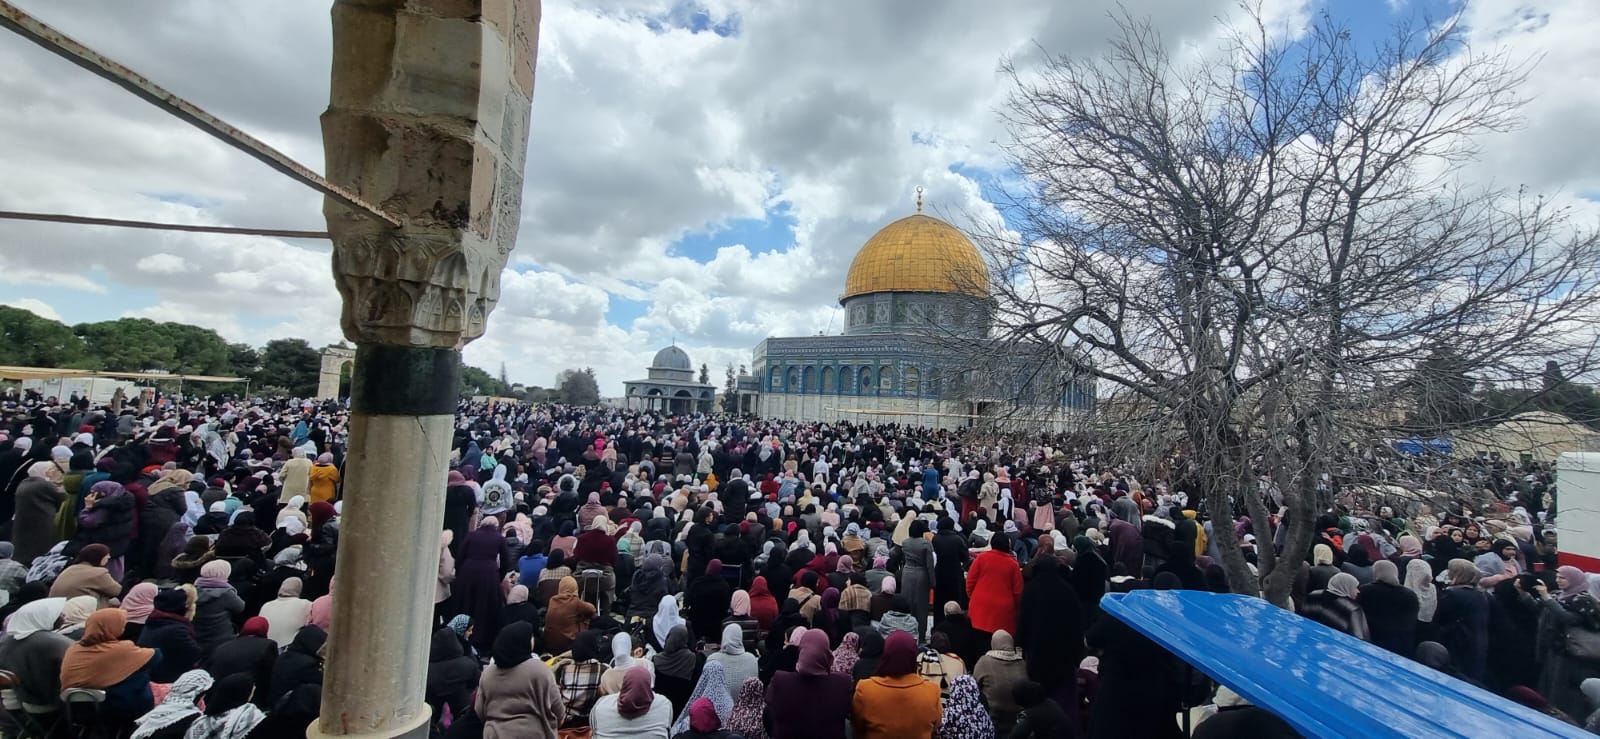 120,000 Palestinians attend Friday prayer at Aqsa despite Israeli restrictions